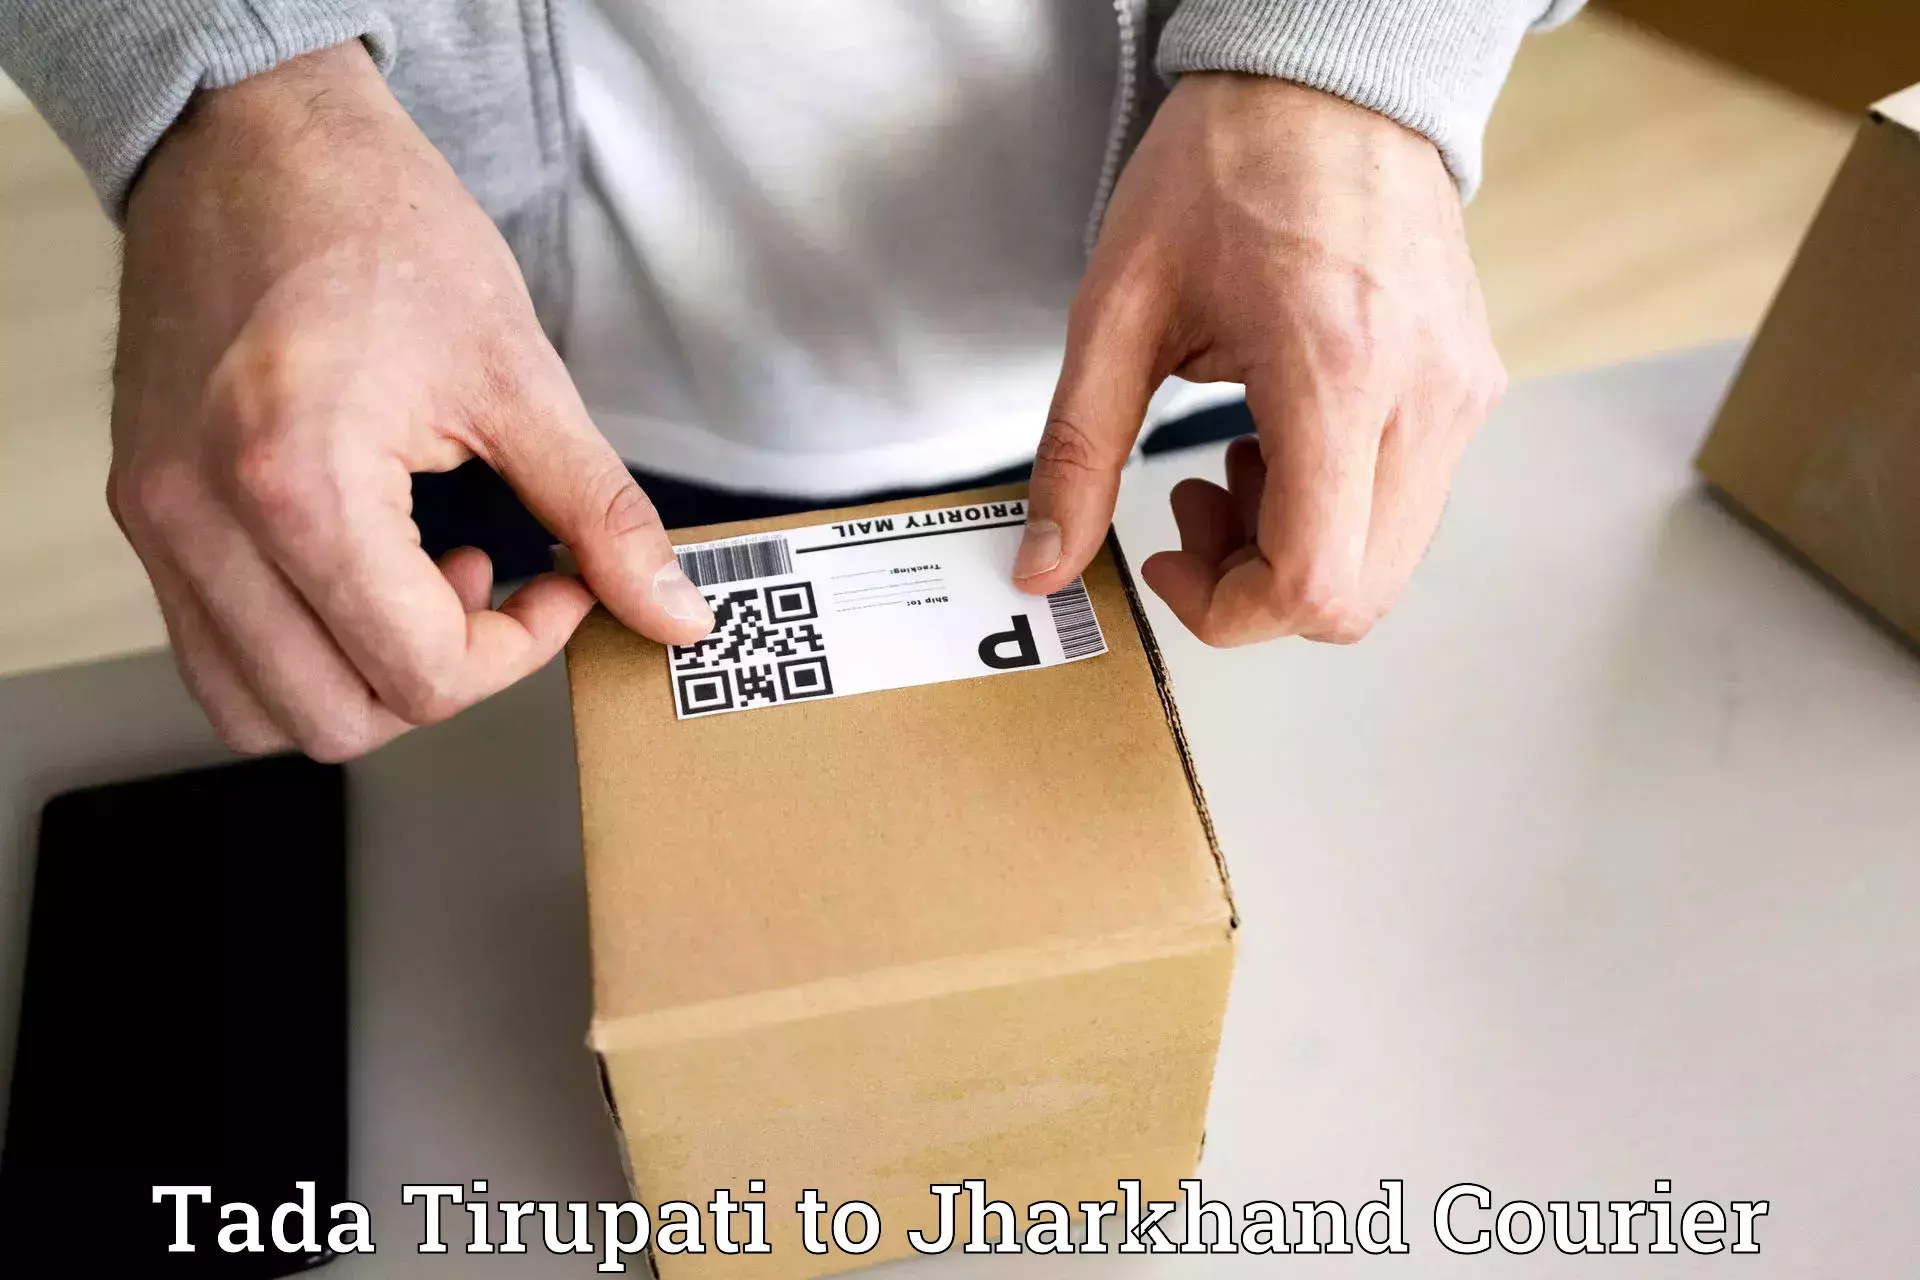 Courier app Tada Tirupati to Nagar Untari